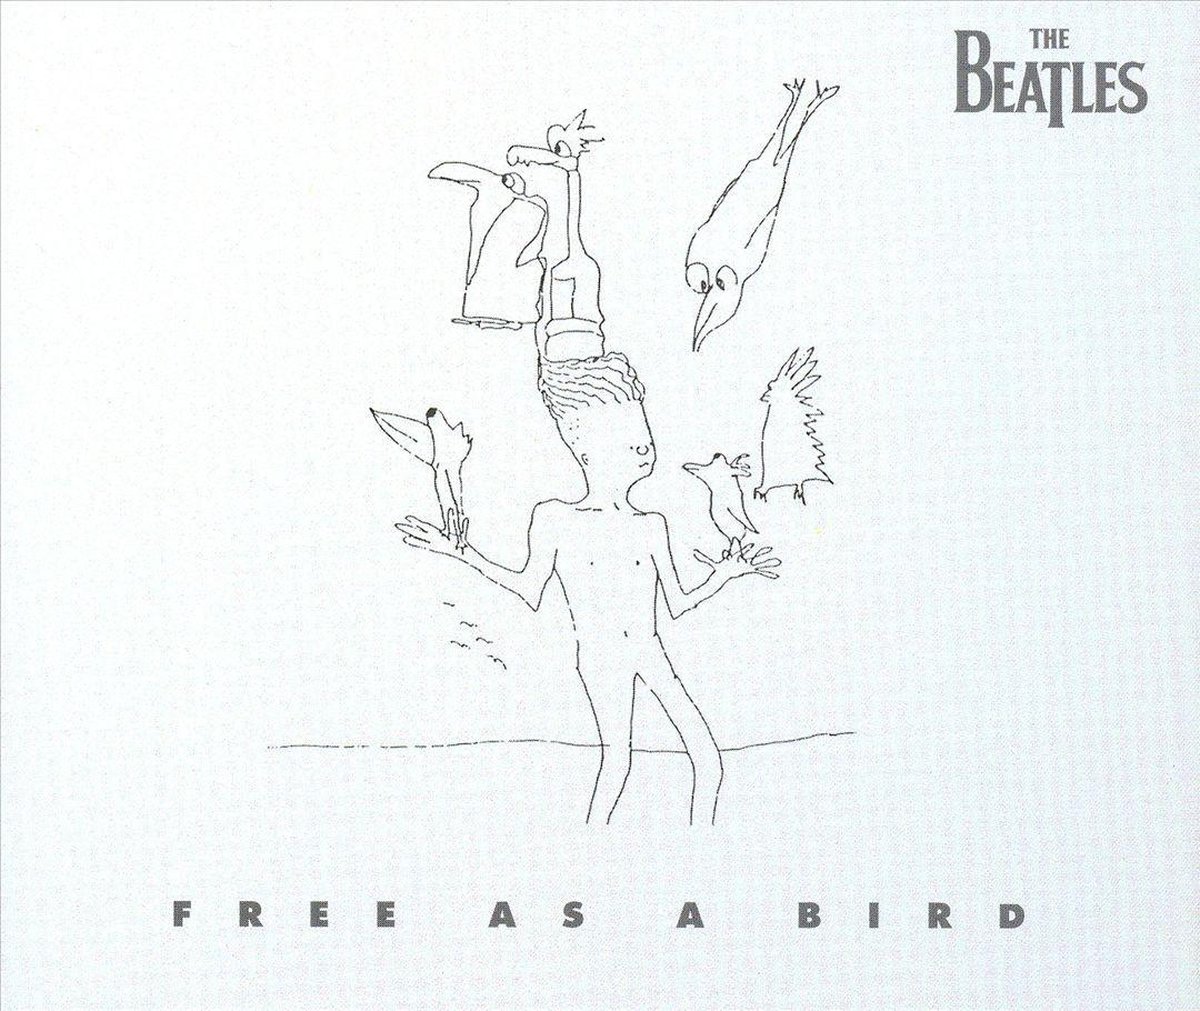 The Beatles - Free As A Bird (1995) (single)